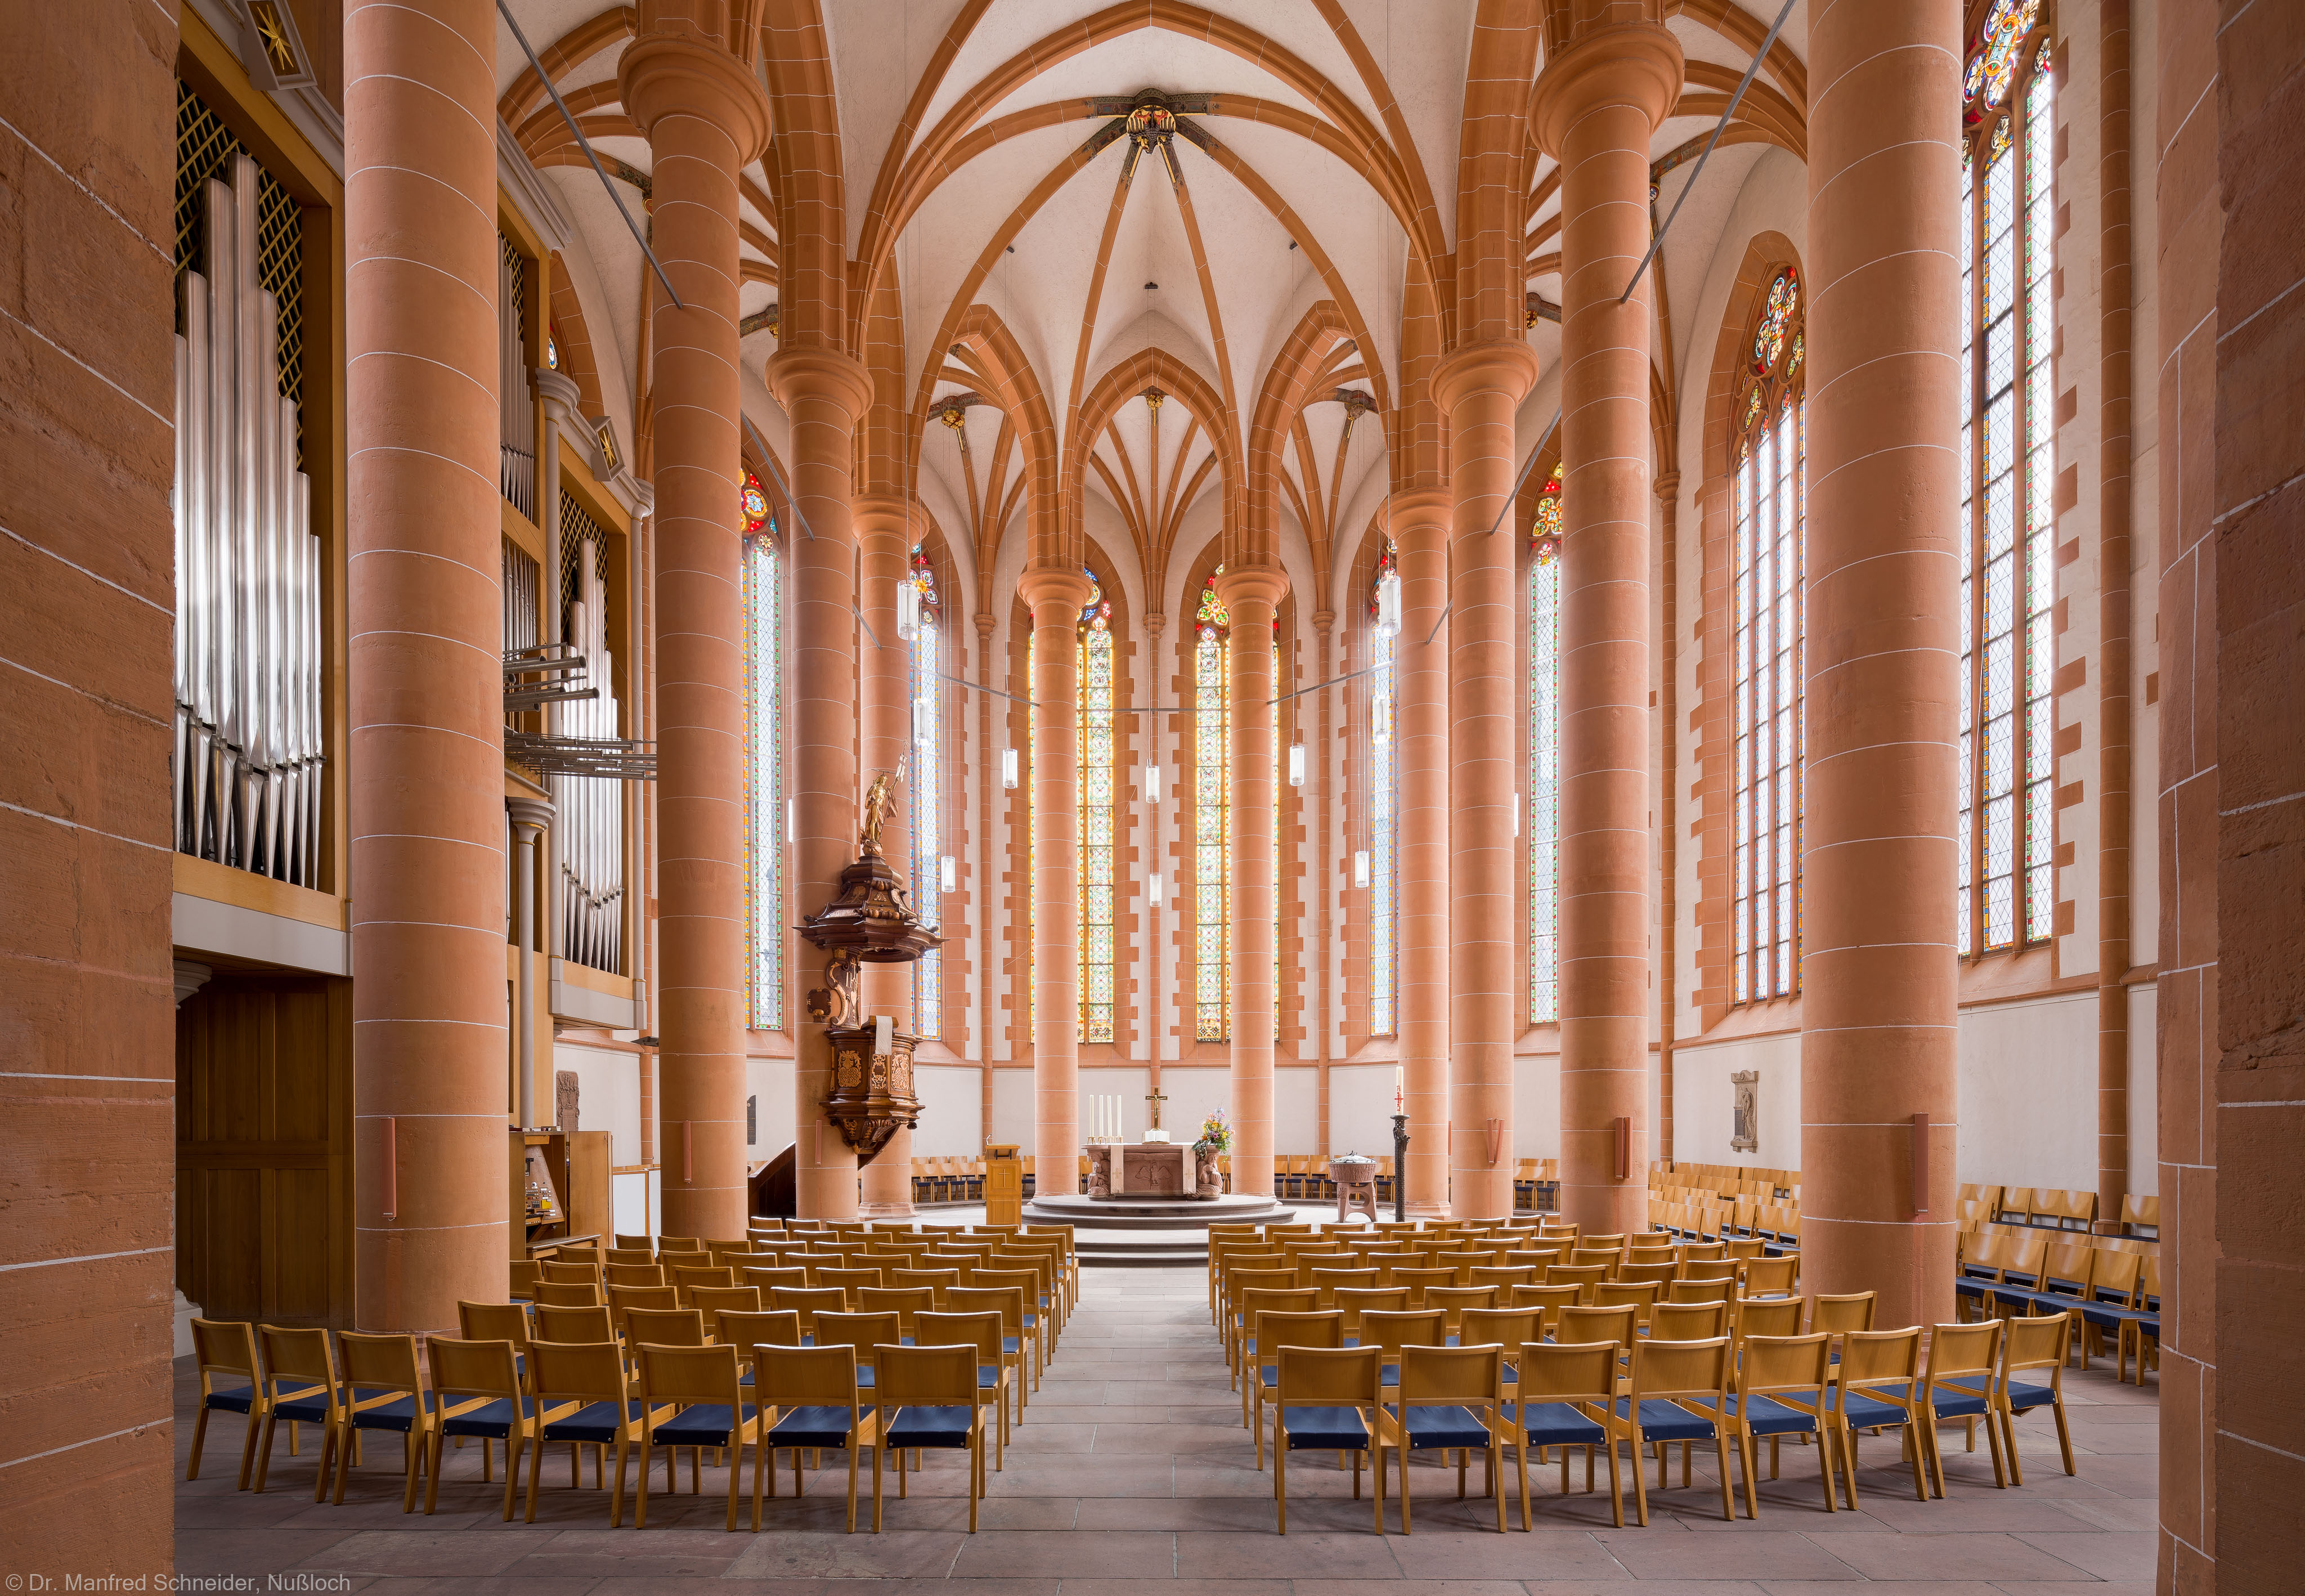 Heidelberg - Heiliggeistkirche - Chor - Blick in den Chor mit Säulen, Gewölbe, Orgel, Kanzel und Altar (aufgenommen im April 2013, am späten Vormittag)